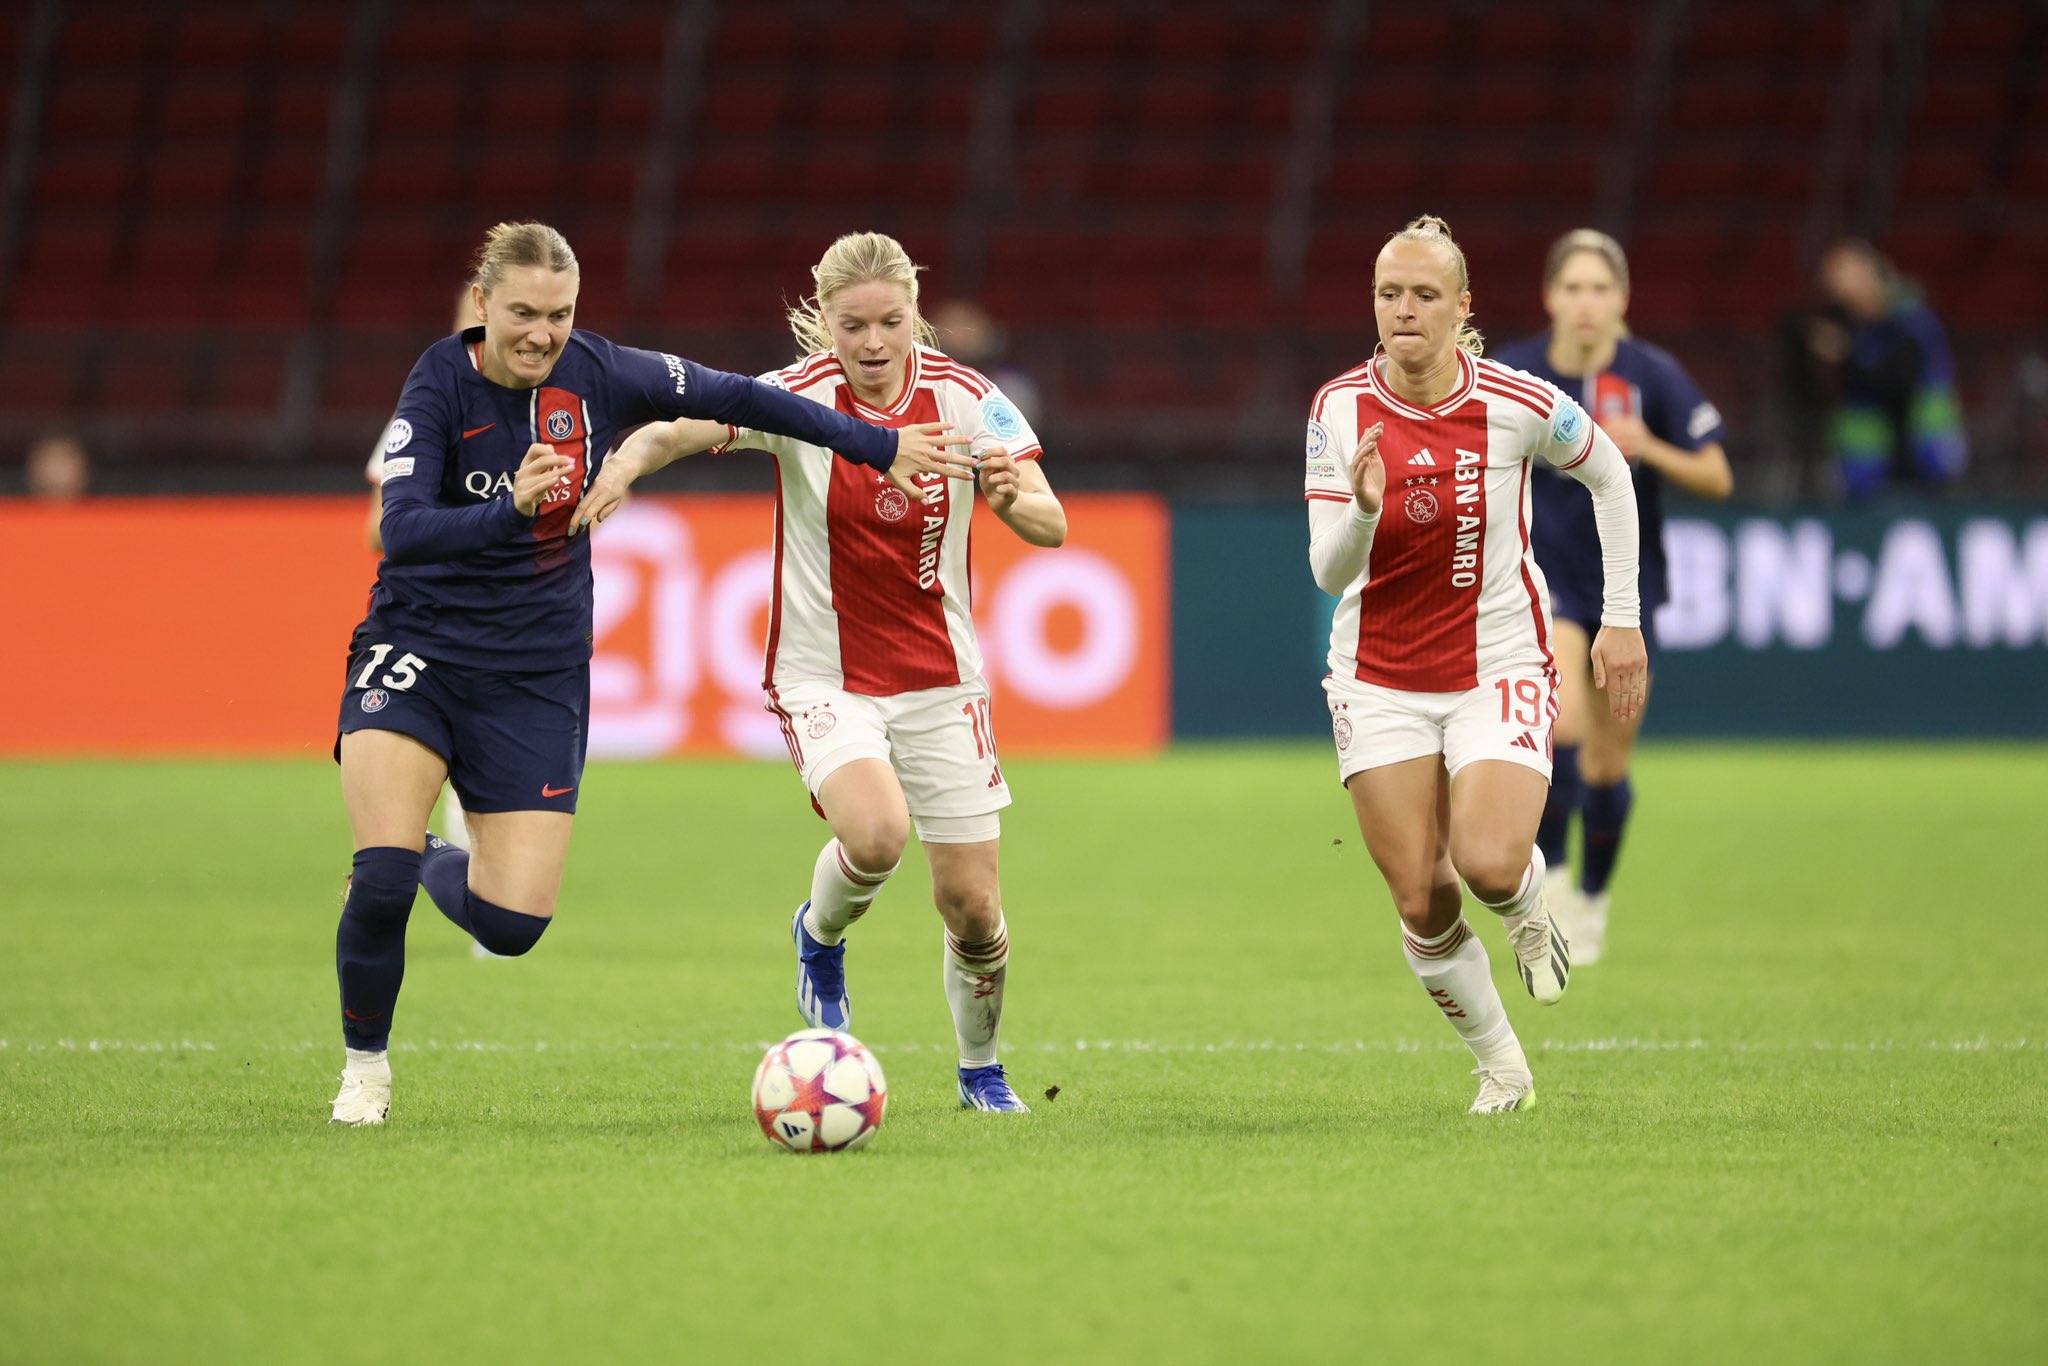 Clare Hunt à gauche, a concédé le penalty en première période (photo Ajax)